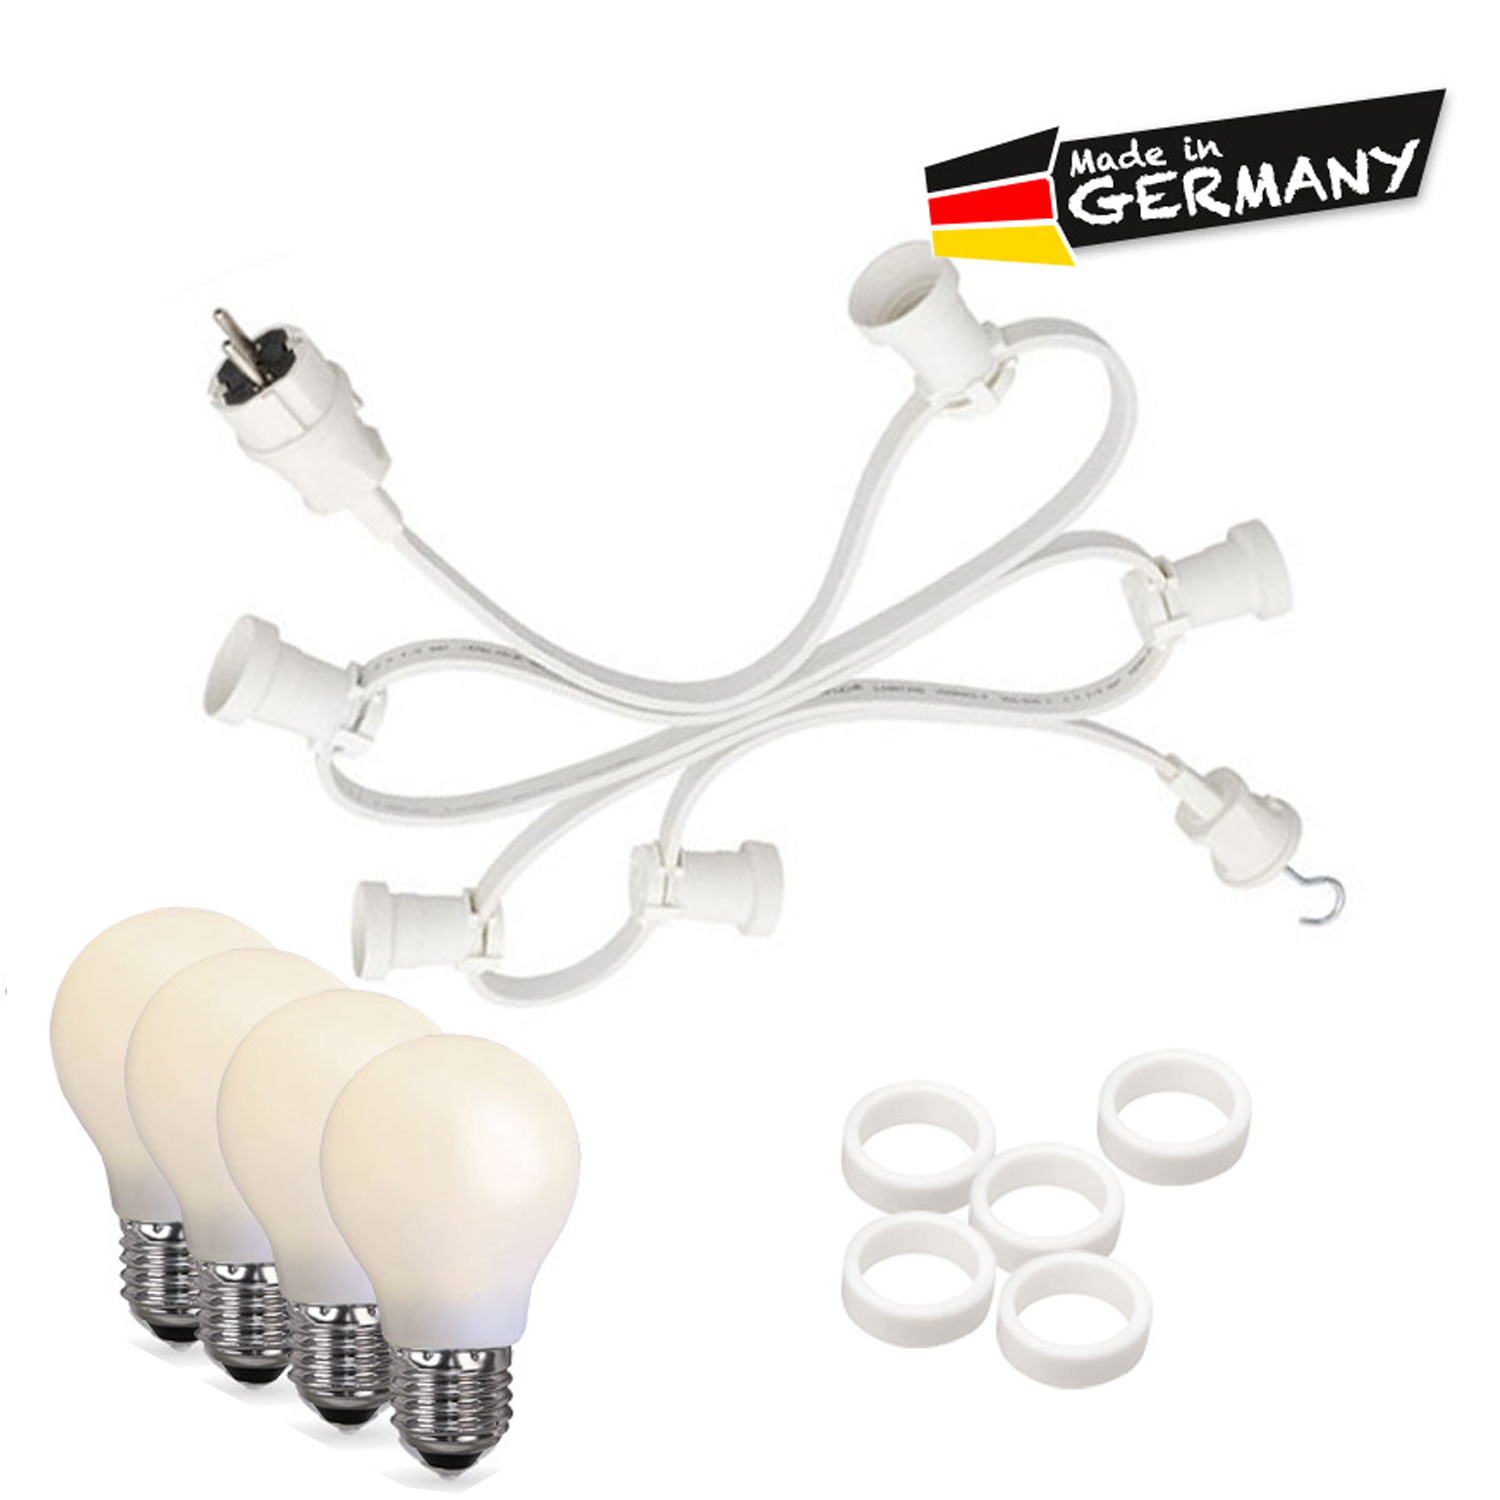 Illu-/Partylichterkette 20m - Außen - Made in Germany - 40 bruchfeste opale LED Tropfenlampen